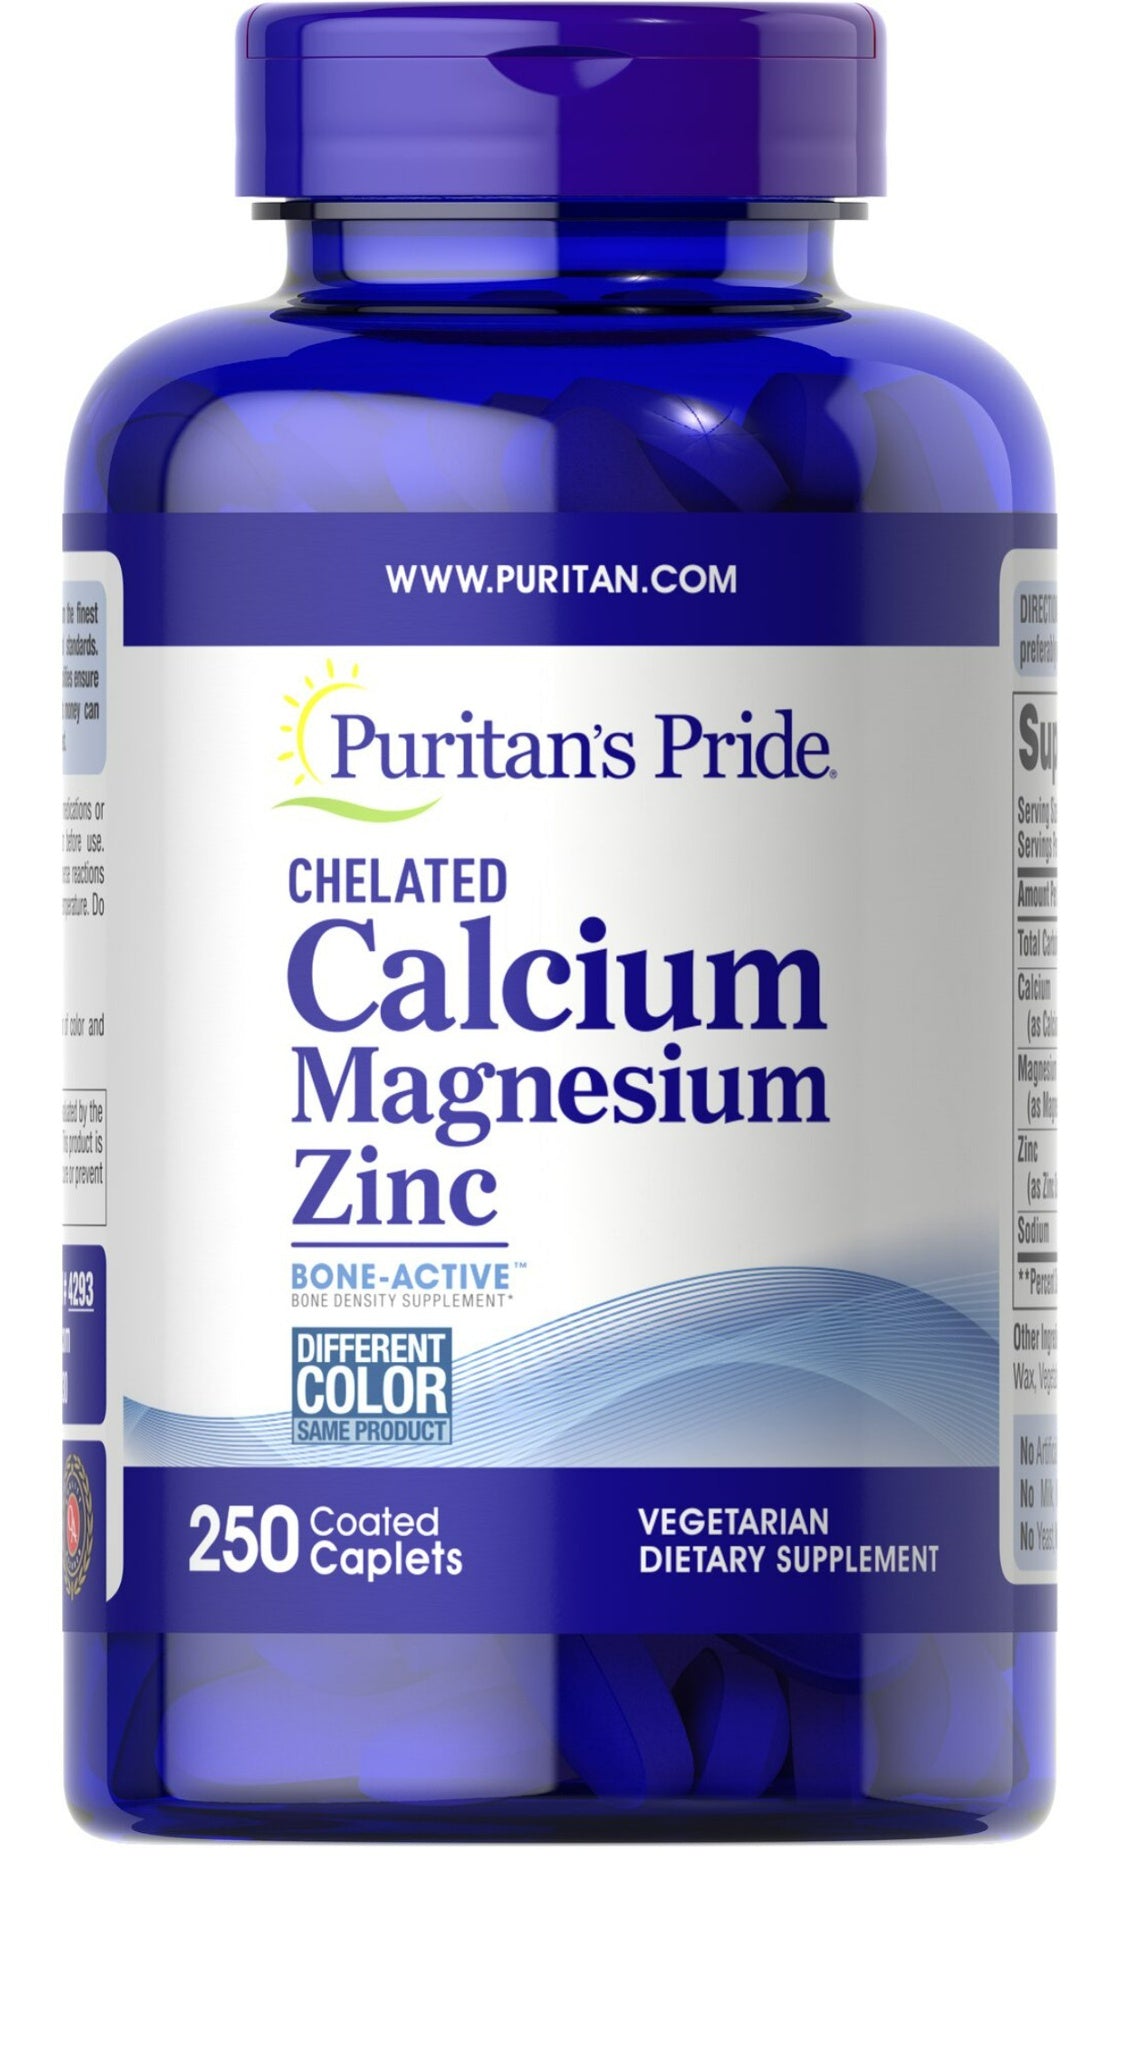 Carbonato de Calcio 600 mg + Vitamina D 125 UI – Puritans Pride Mexico